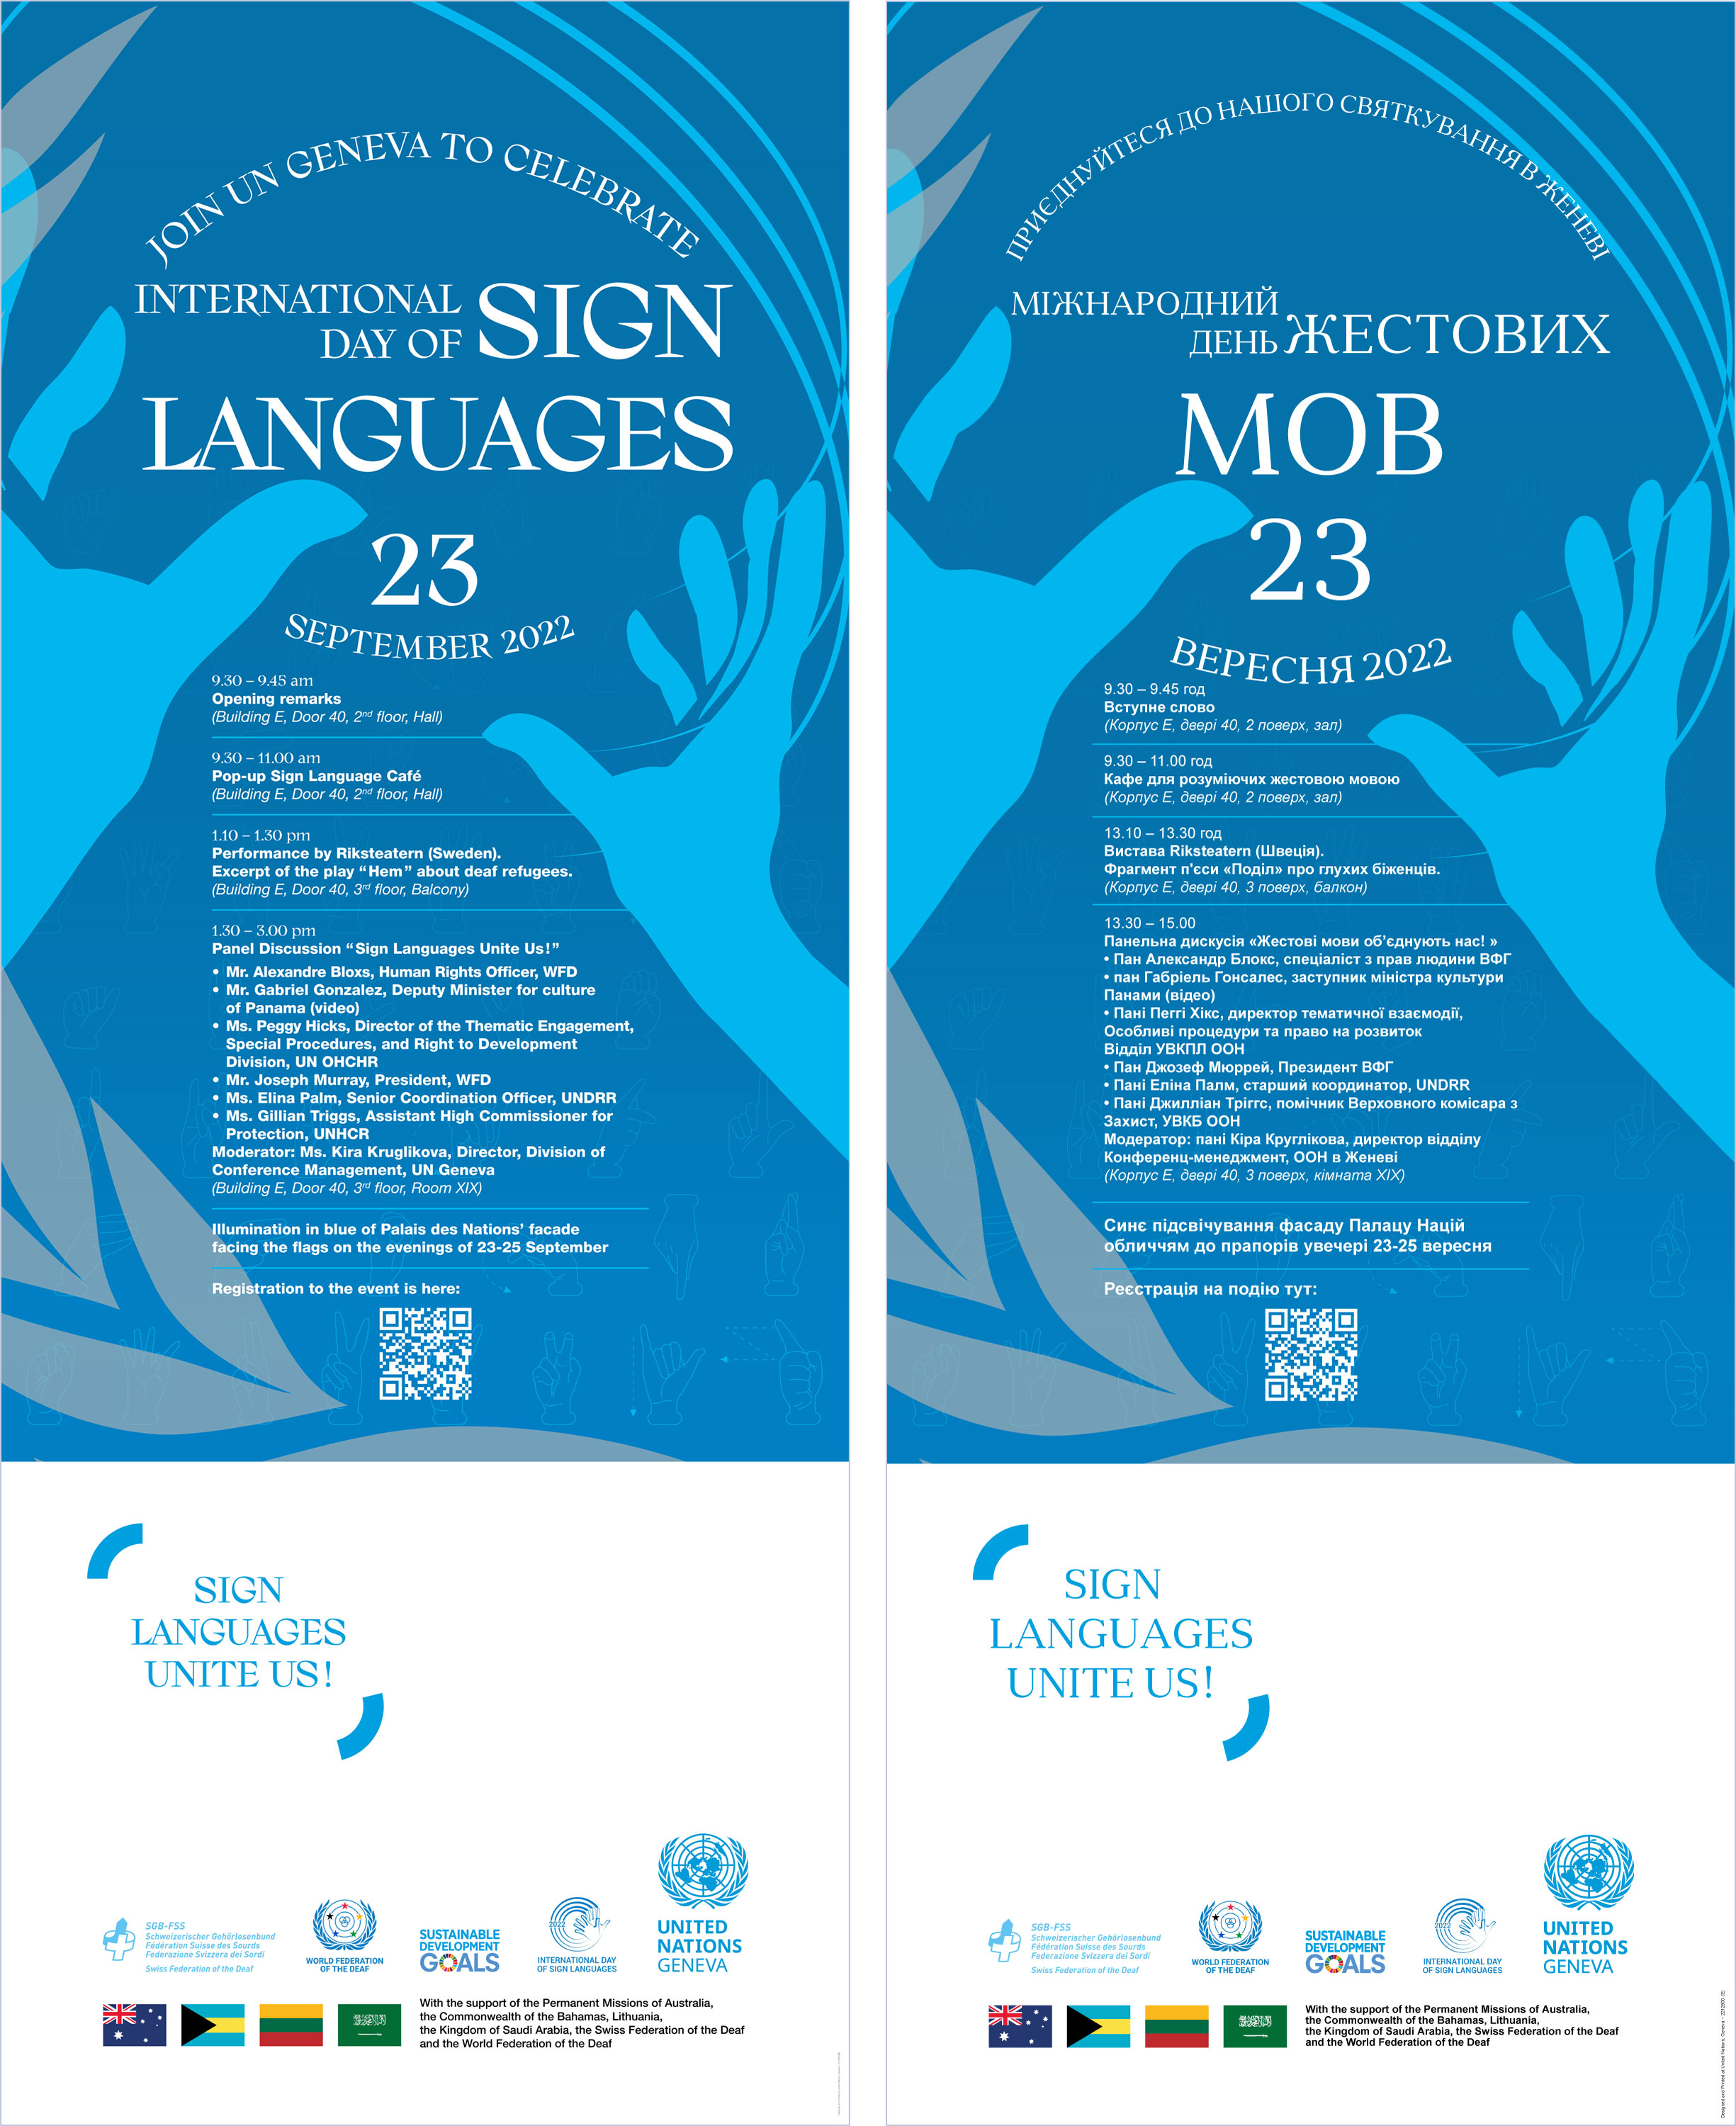 Тема: Міжнародний день жестових мов в офісі ООН у Женеві